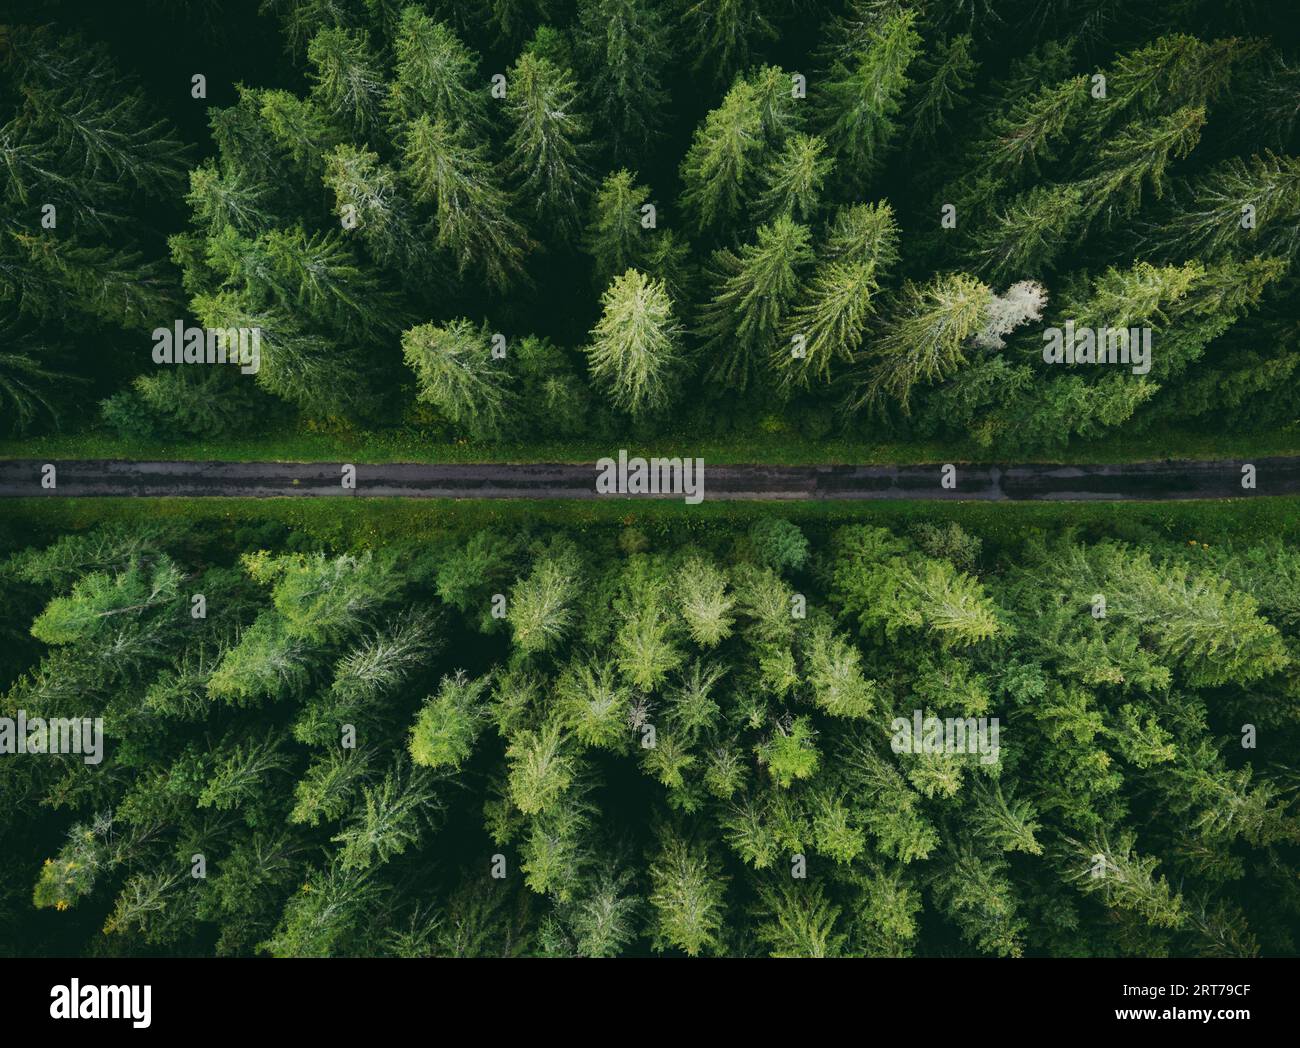 Foto aérea de gran angular por drone (vista superior) de increíble bosque de pinos verdes con carretera curva (camino). Imagen colorida y saturada del camino en la naturaleza desde a. Foto de stock